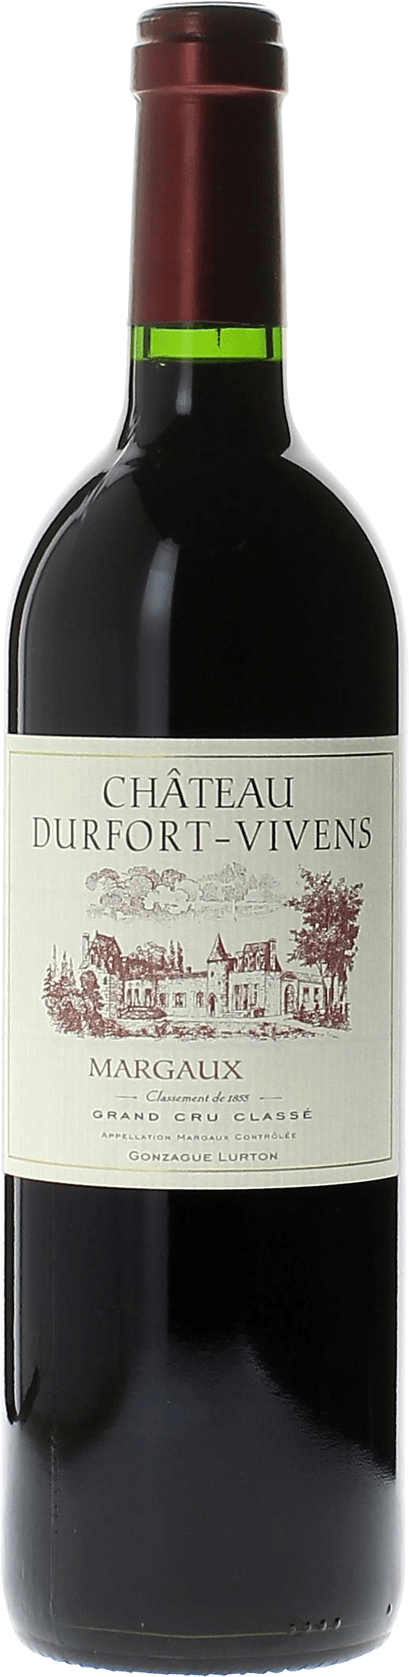 Durfort vivens 2020  Margaux, Bordeaux rouge